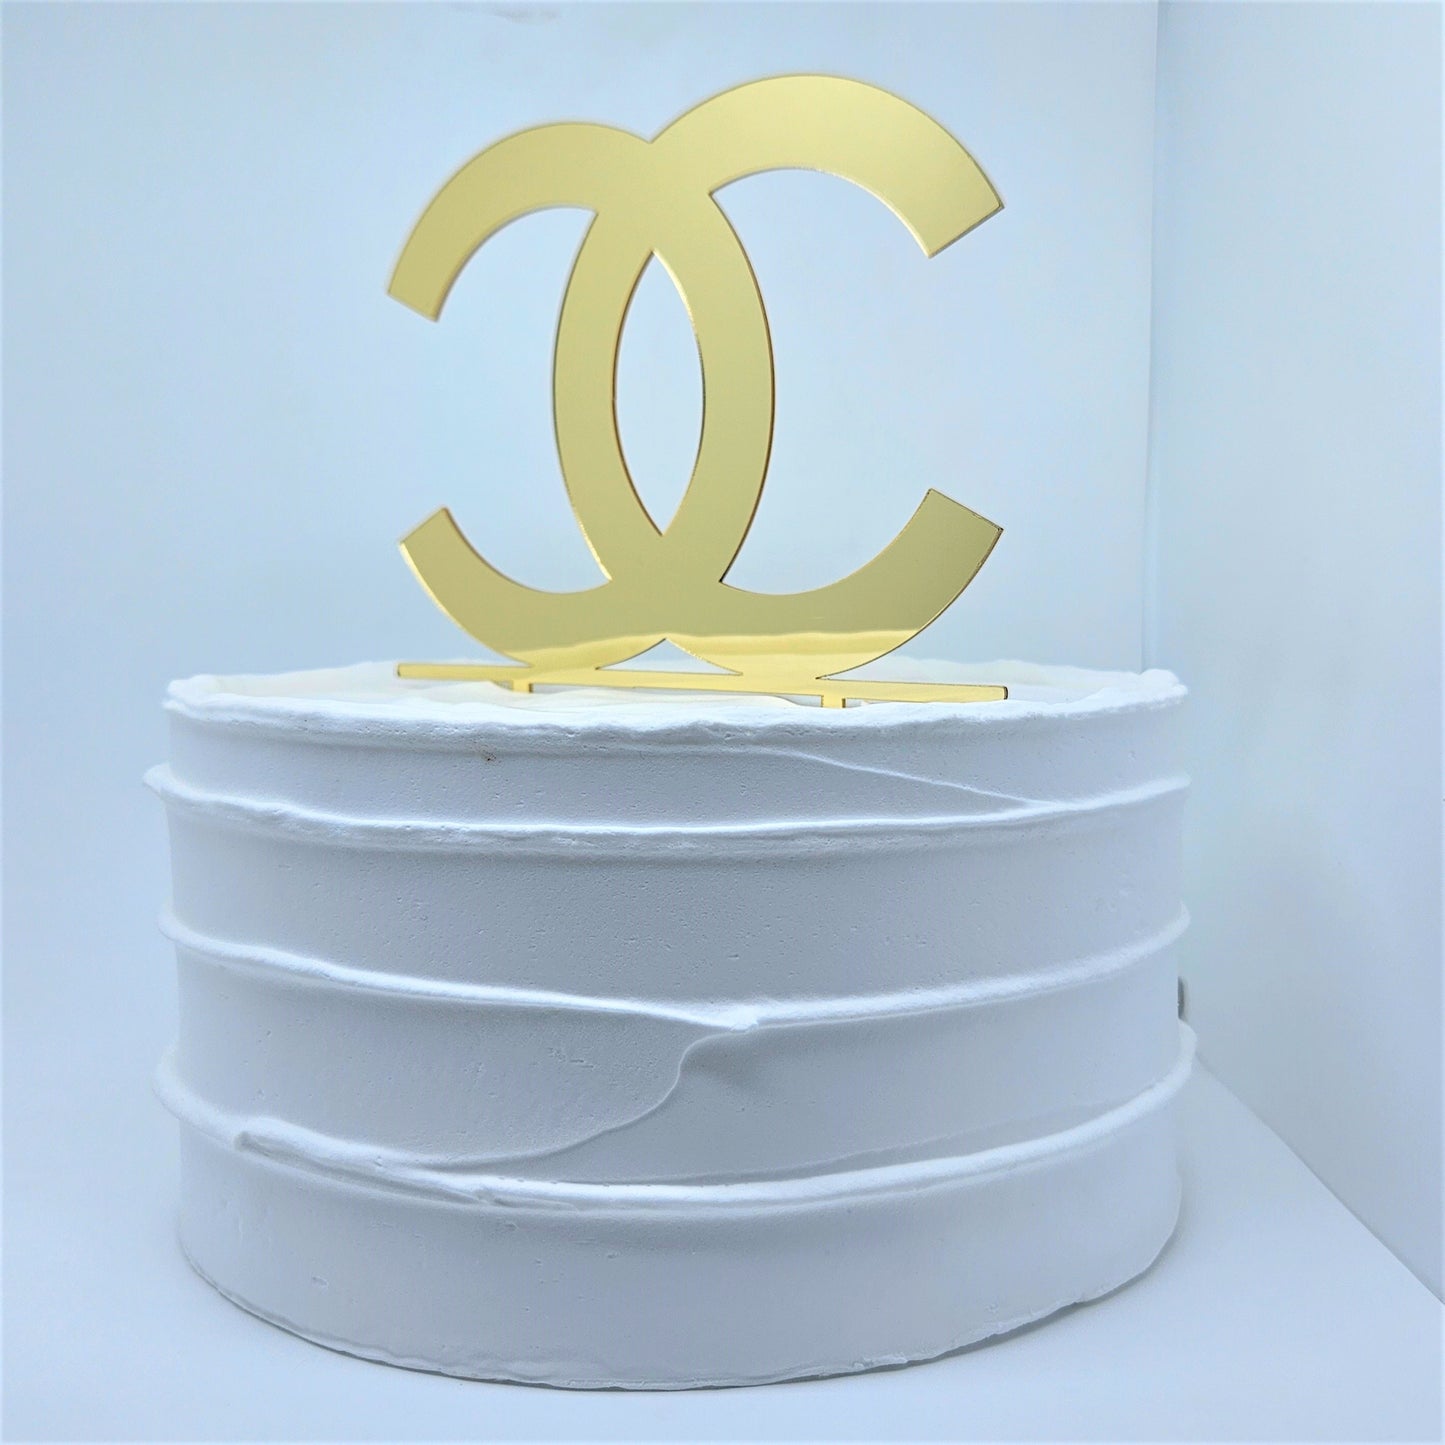 Fashion Cake Topper - Gold